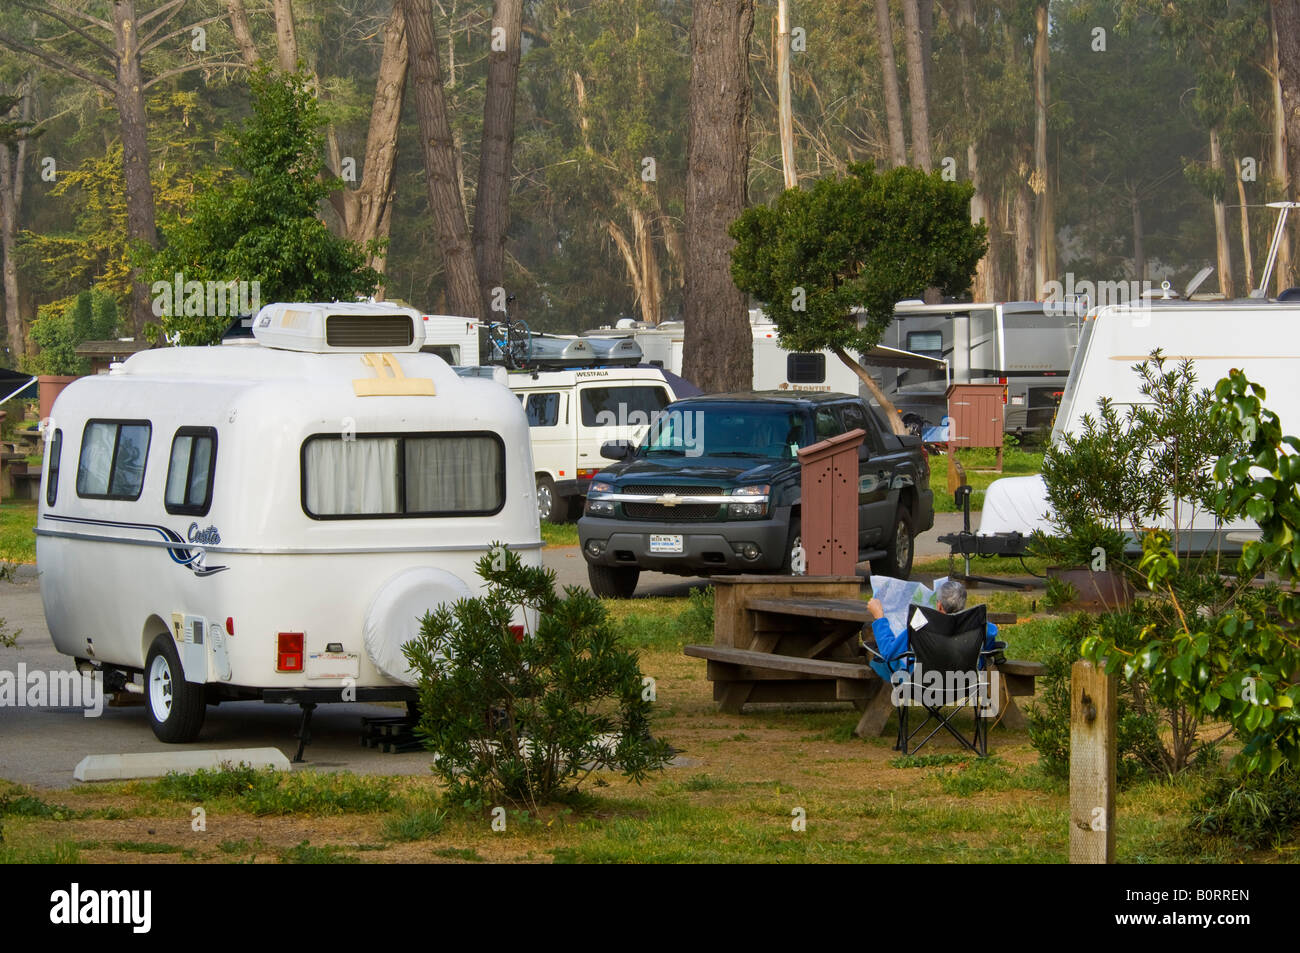 Campingplatz Und Rv Camper Am Morro Bay State Park Campground Morro Bay Kalifornien Stockfotografie Alamy